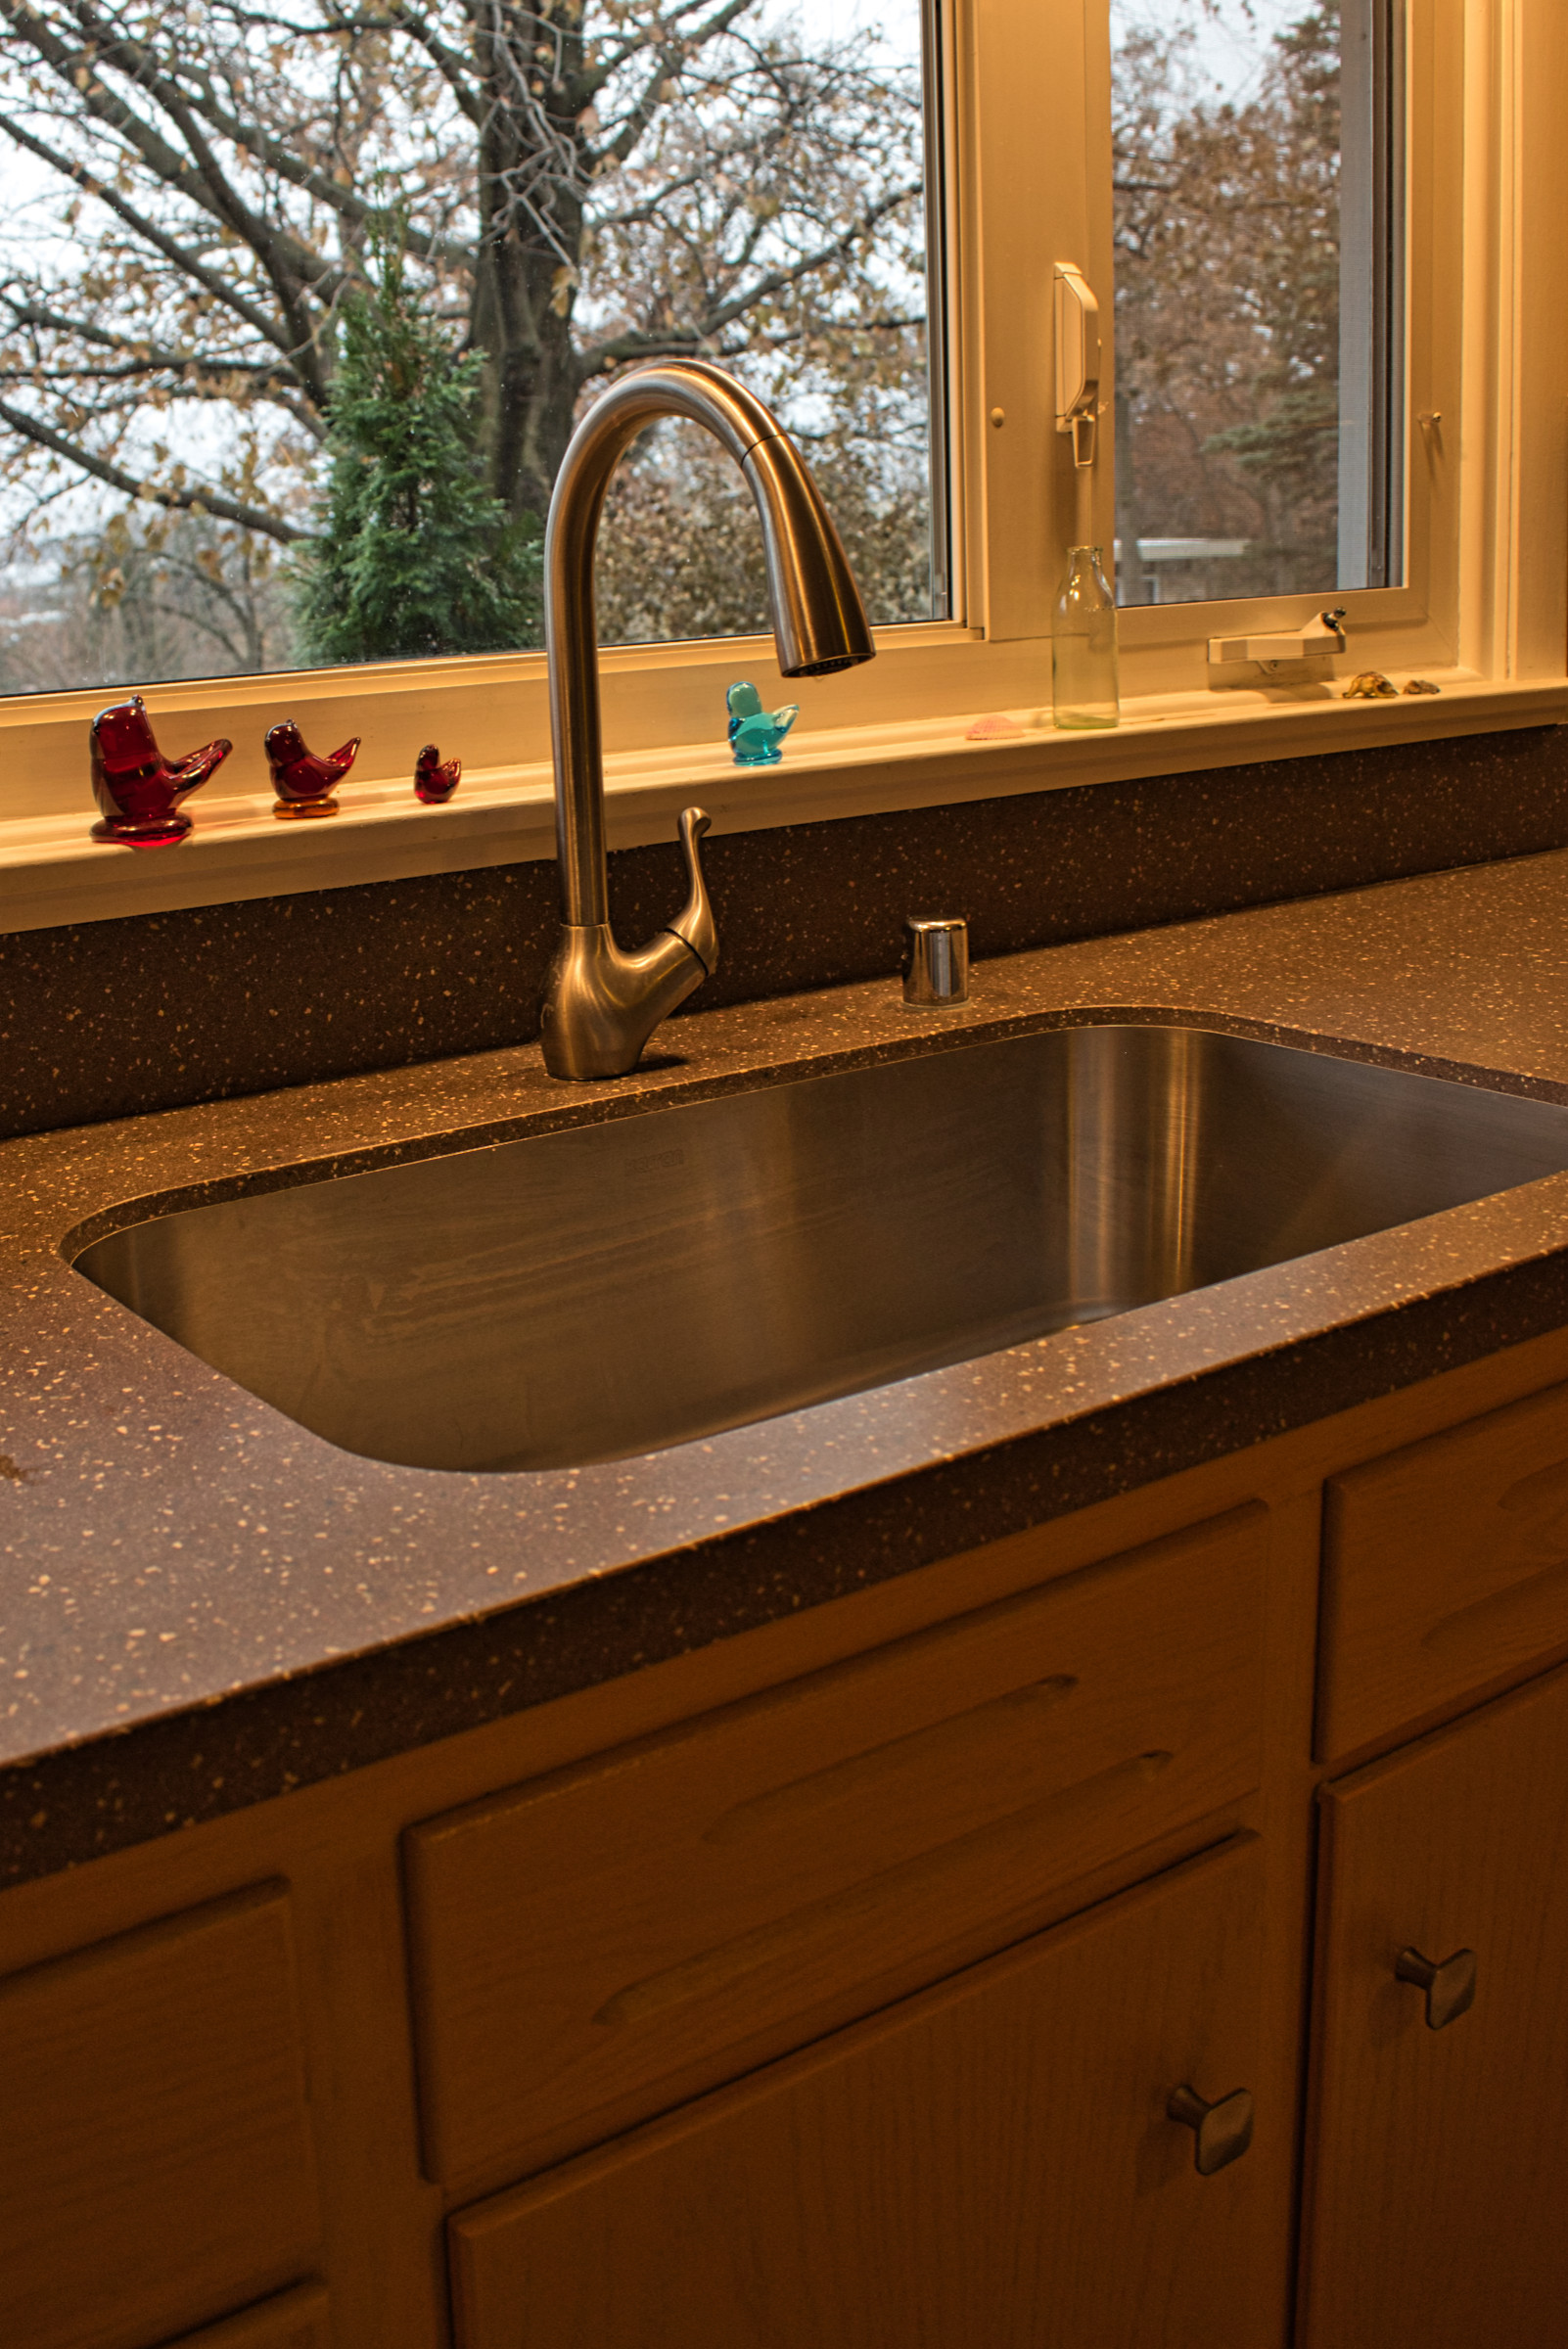 Queens Way Kitchen Remodel - Sink & Faucet